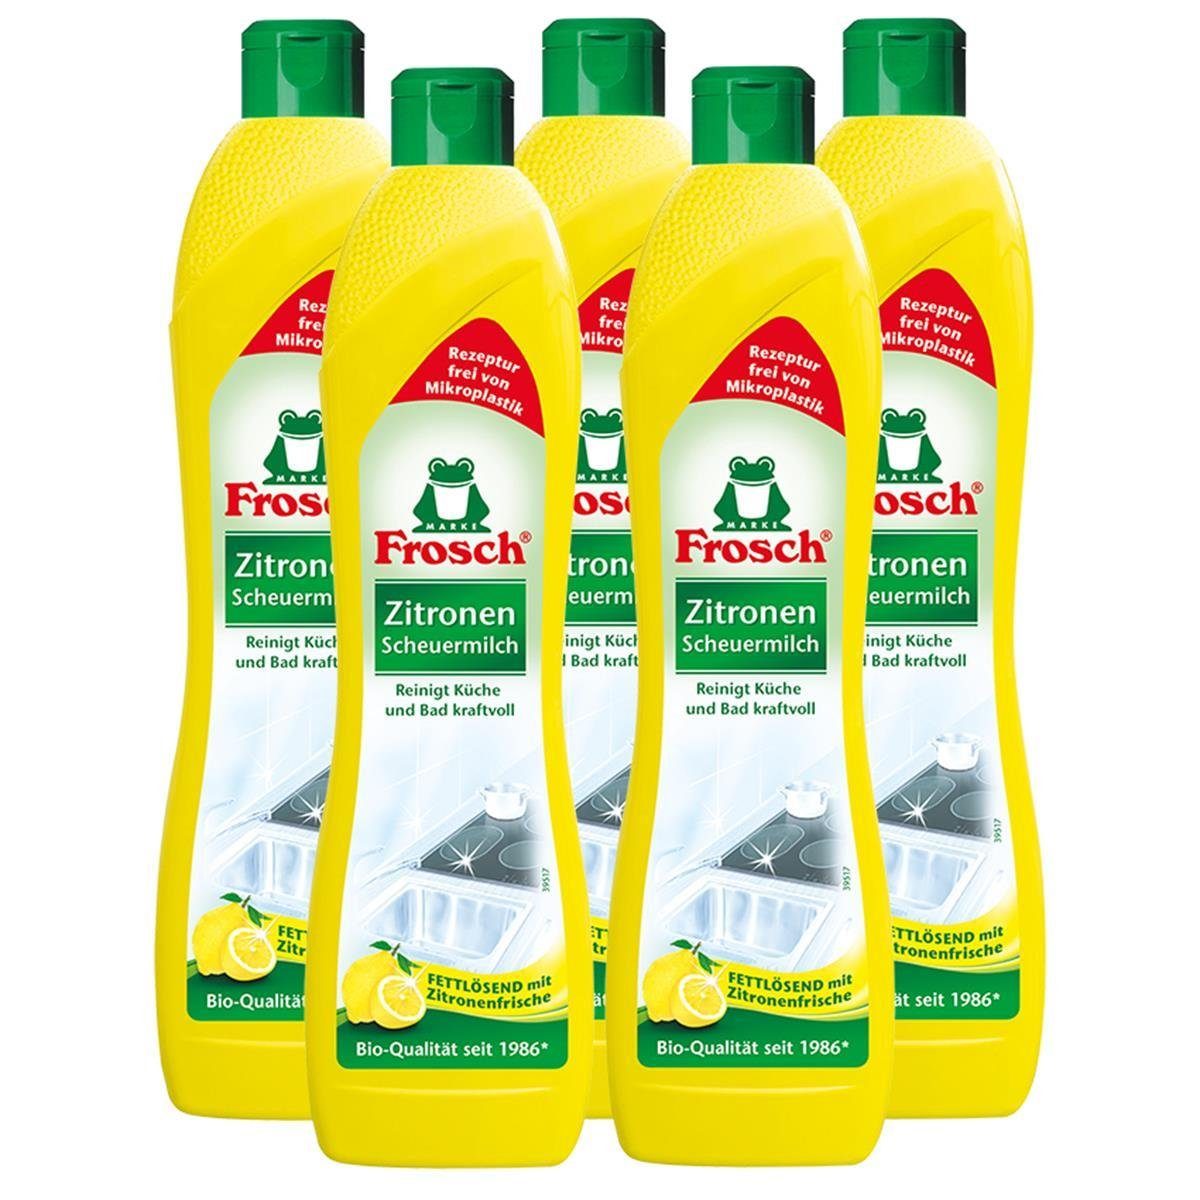 FROSCH 5x Frosch Zitronen Scheuermilch 500 ml - Reinigt Bad und Küche kraftvo Spezialwaschmittel